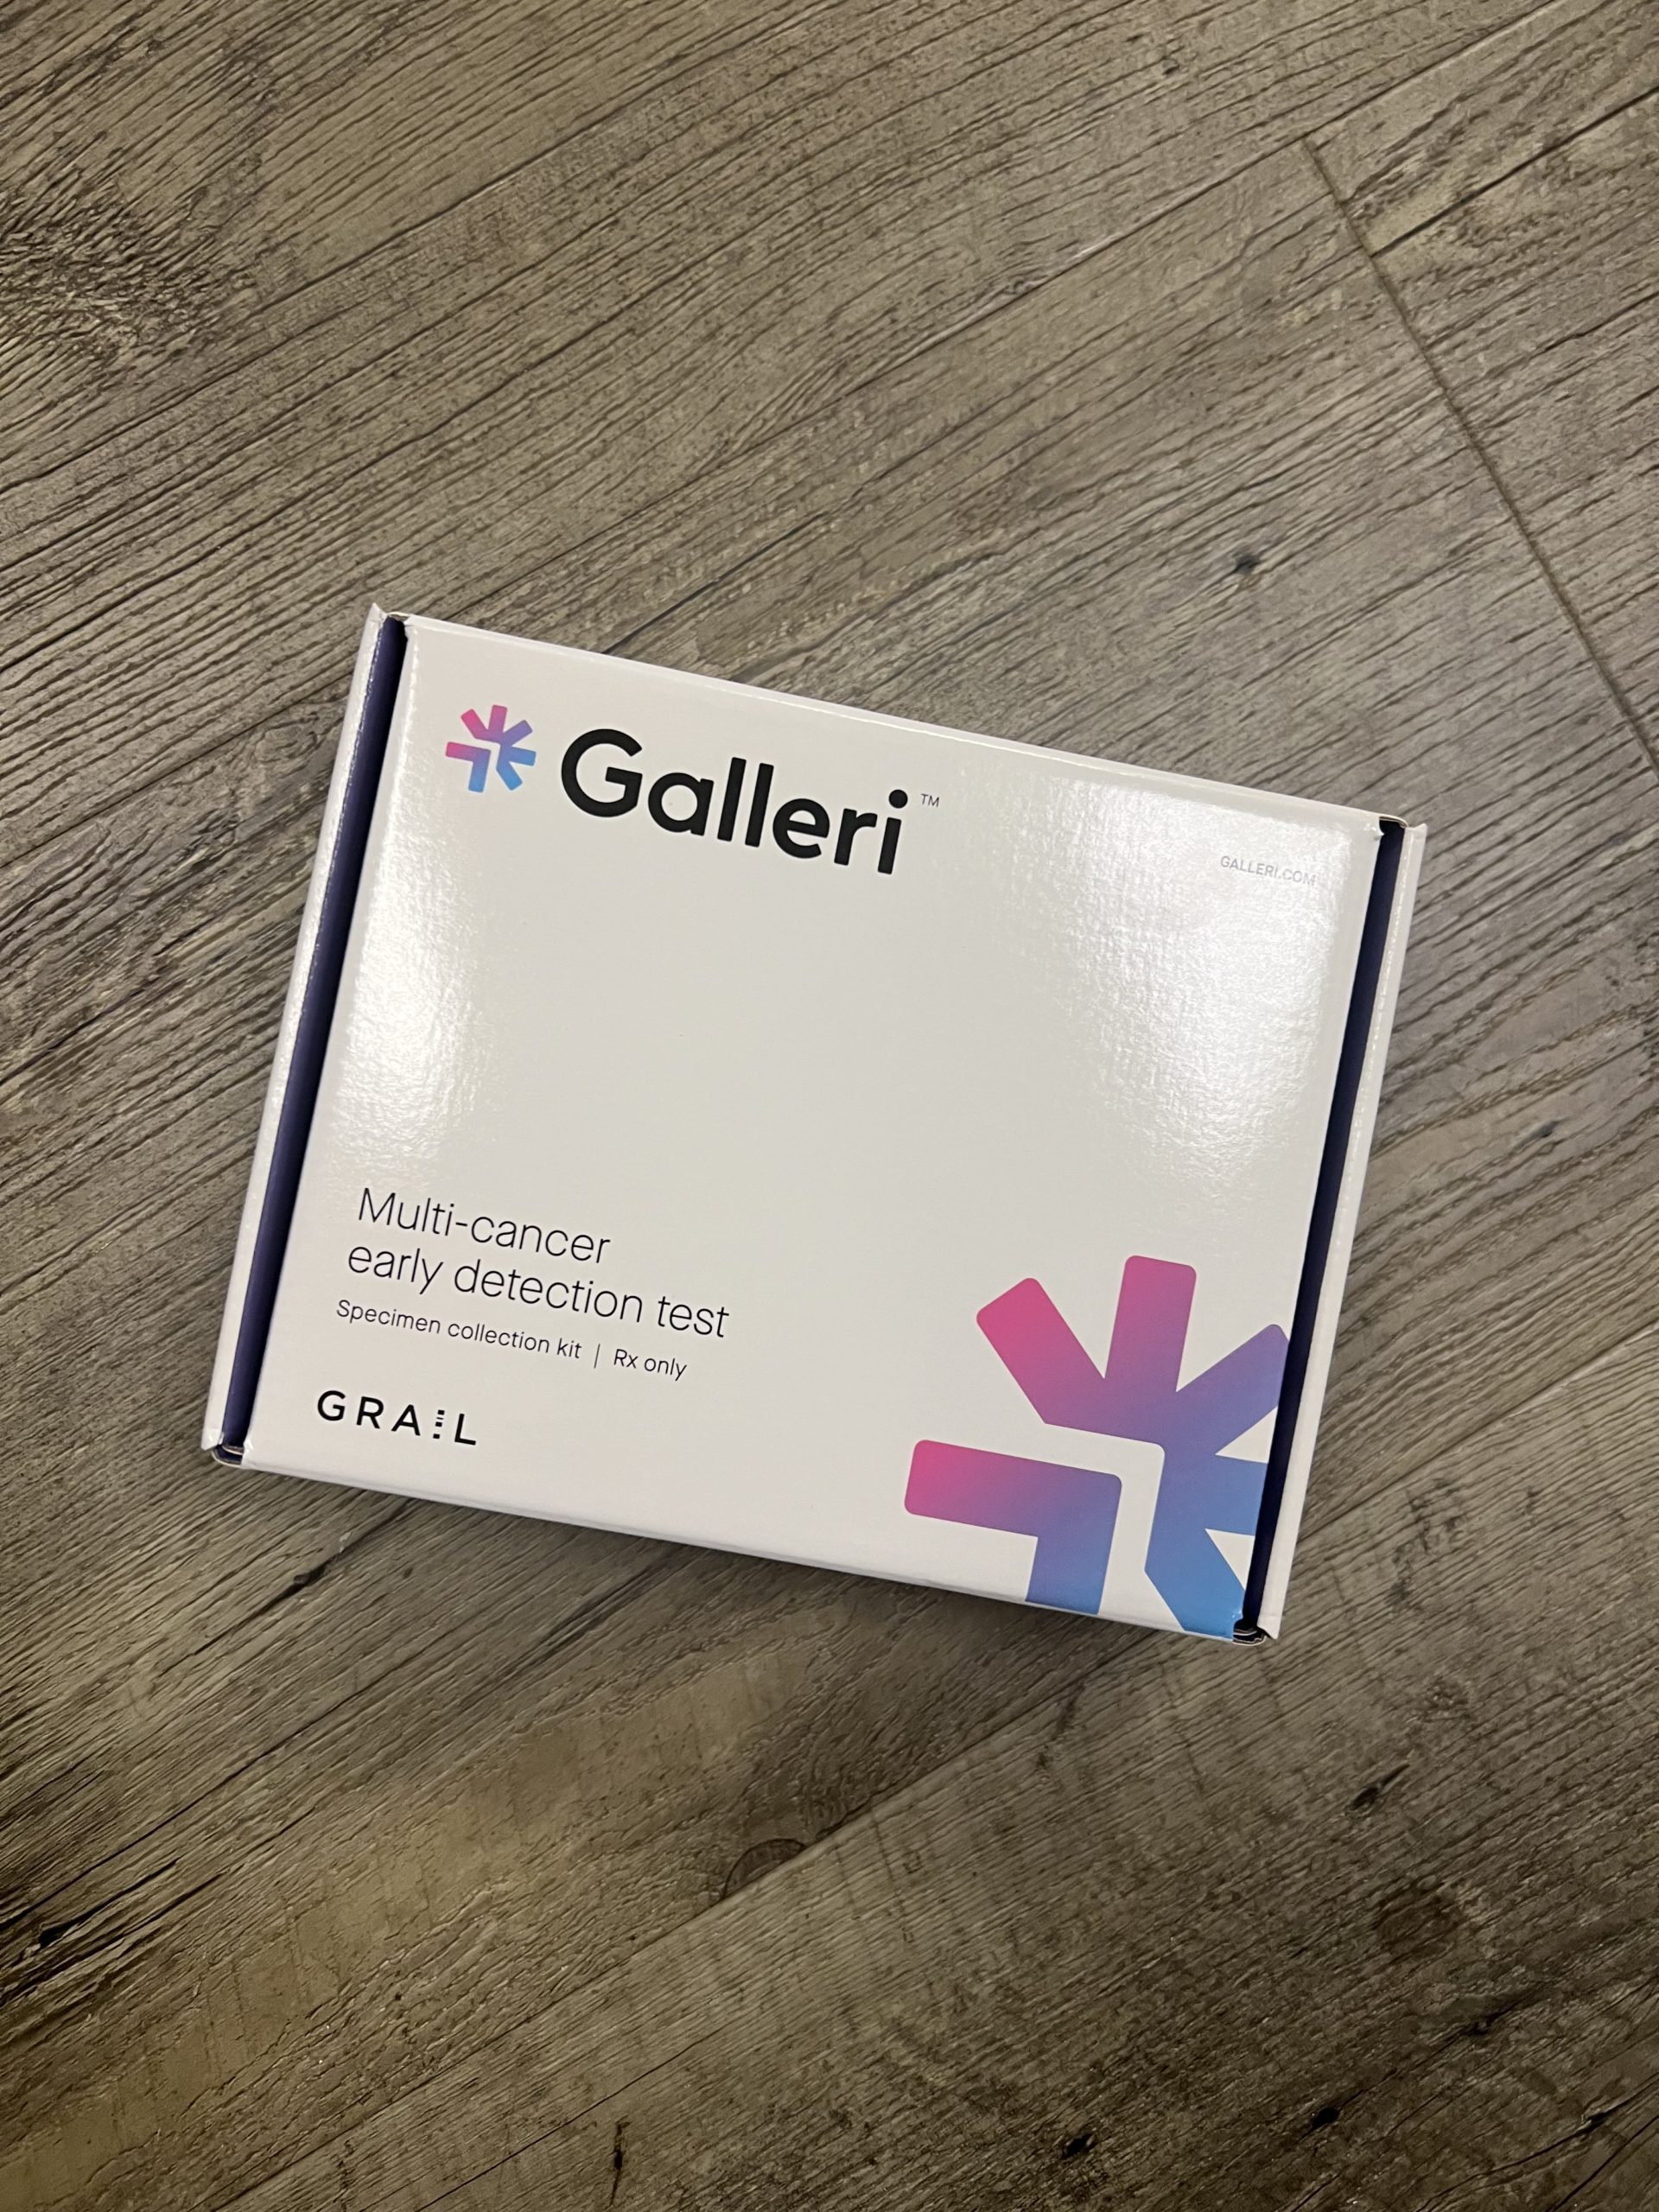 Galleri test kit box for grail test